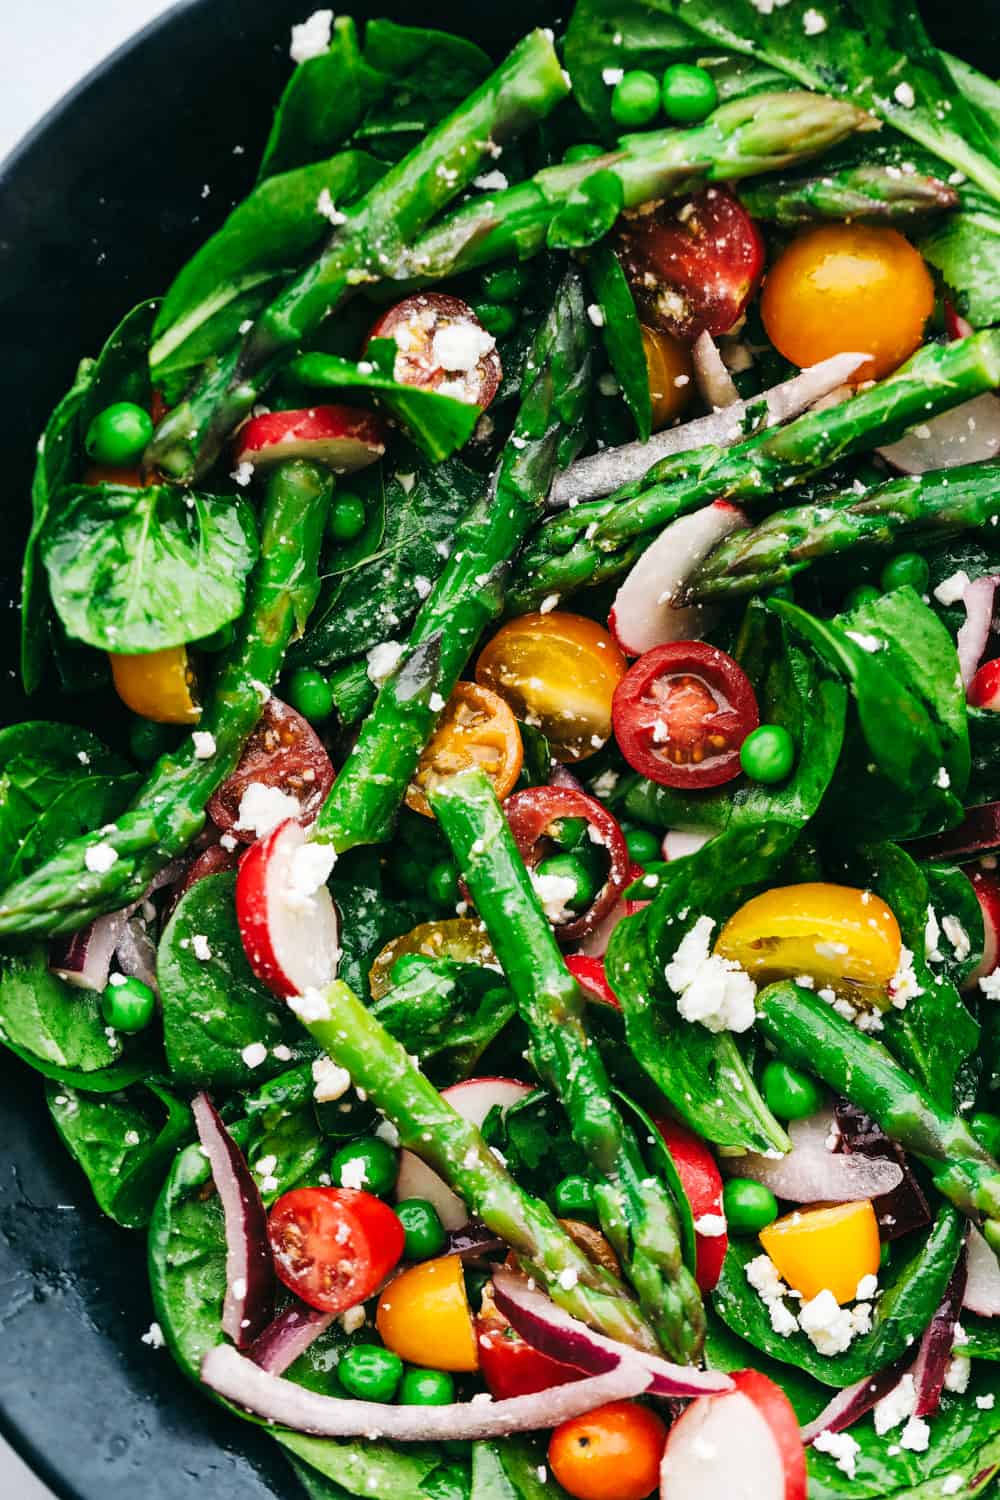 Asparagus Salad with Lemon Vinaigrette | The Recipe Critic